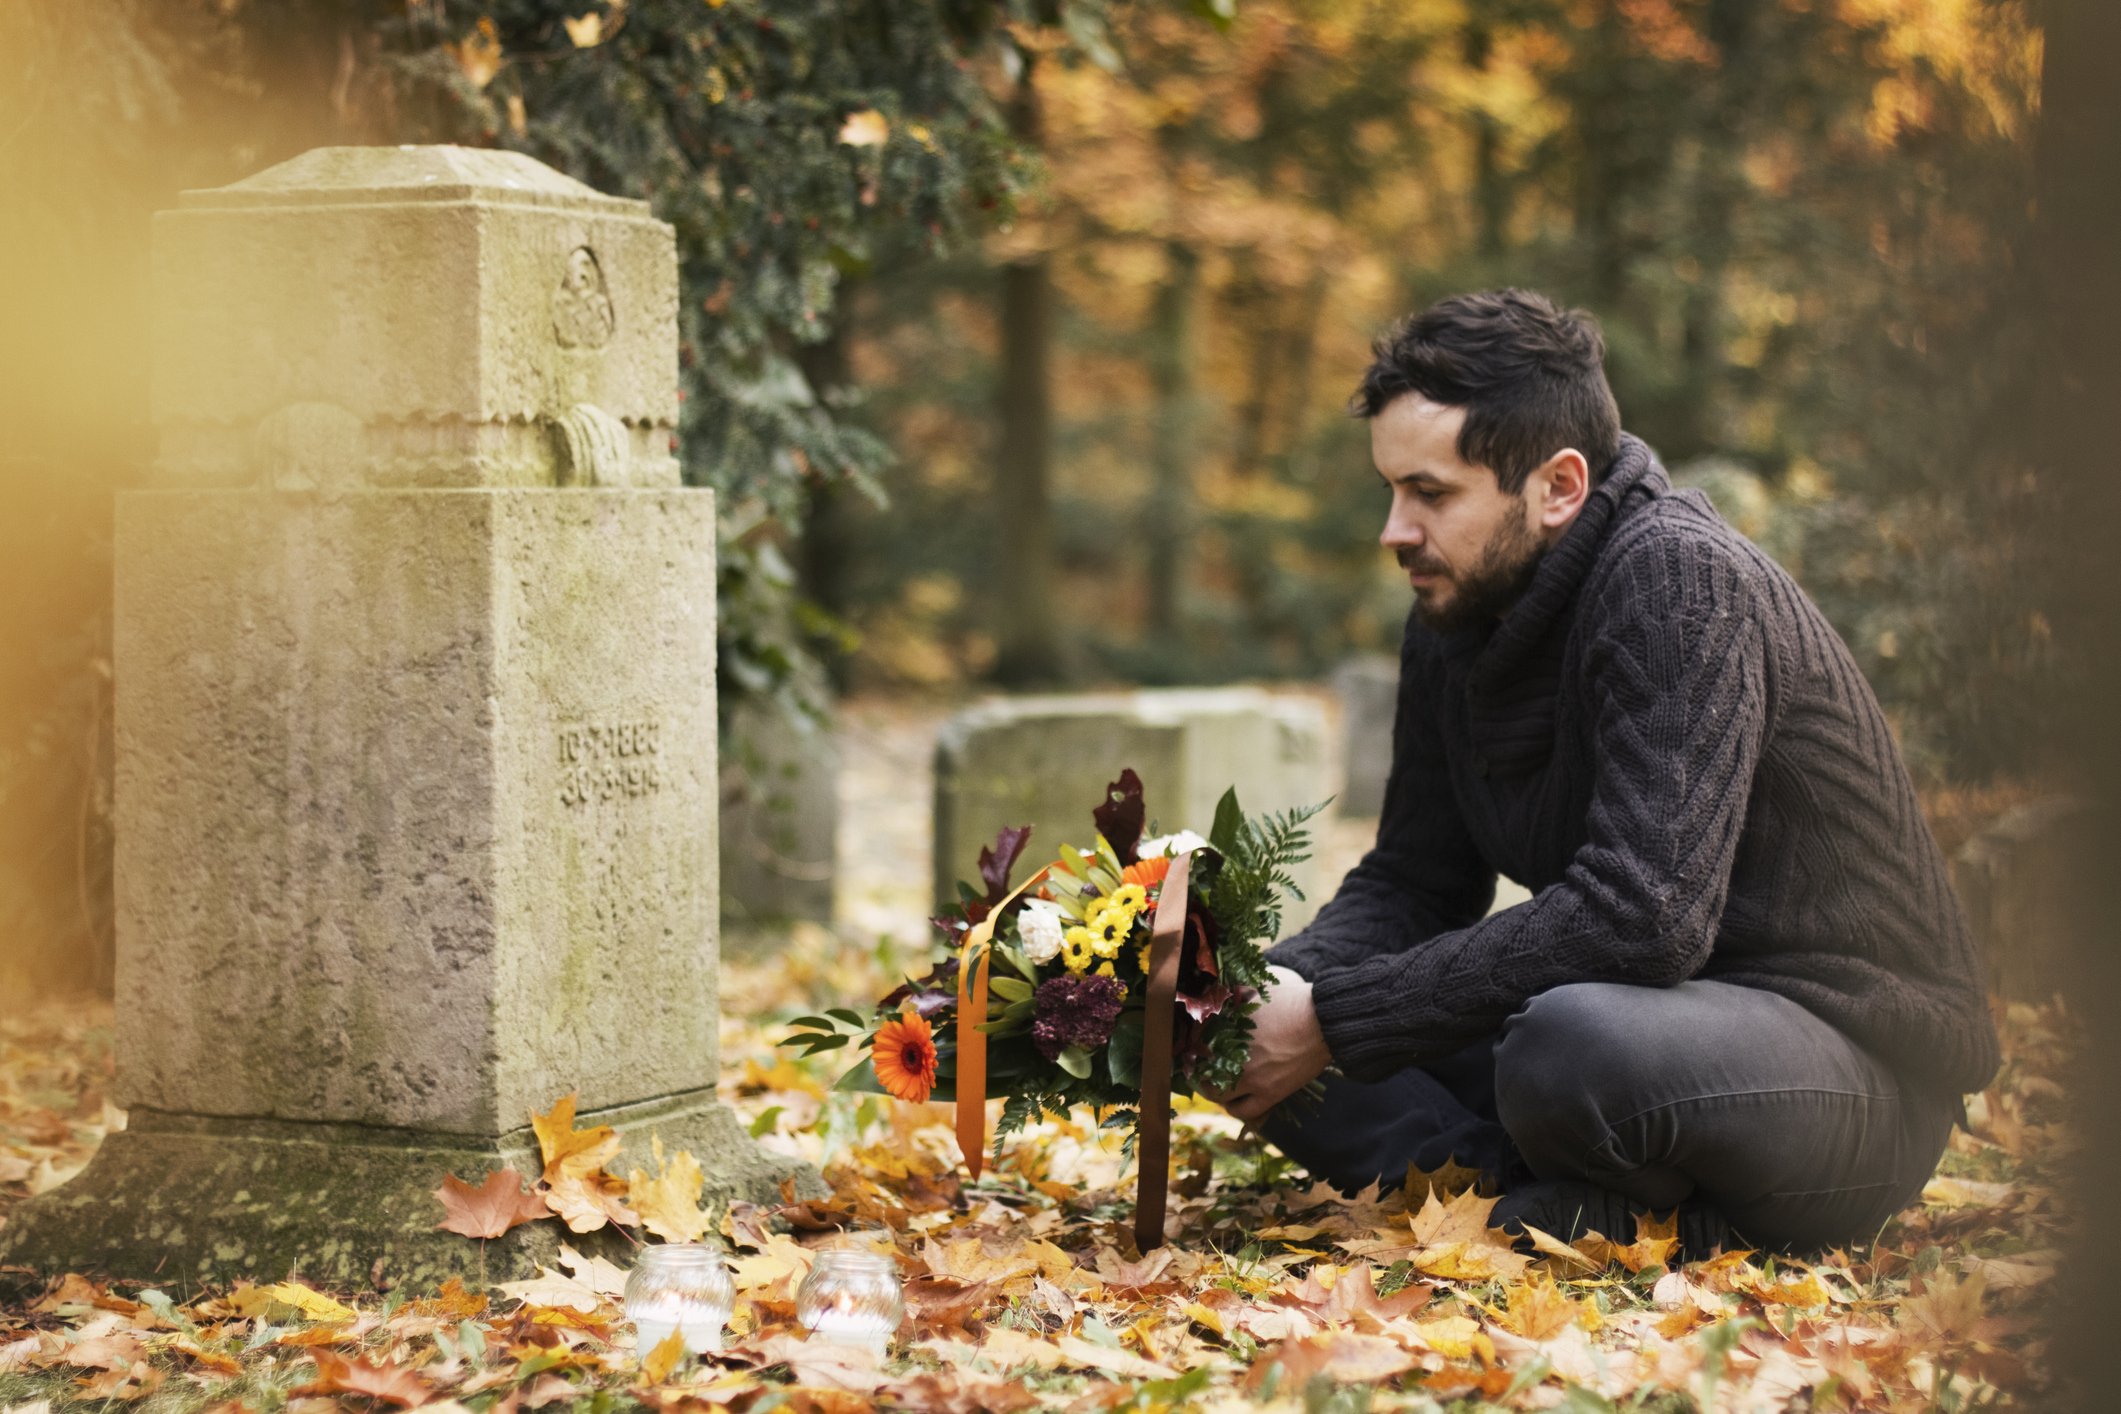 Matthew pleurait la mort de sa femme sur sa tombe quand une femme mystérieuse est apparue. | Photo : Getty Images